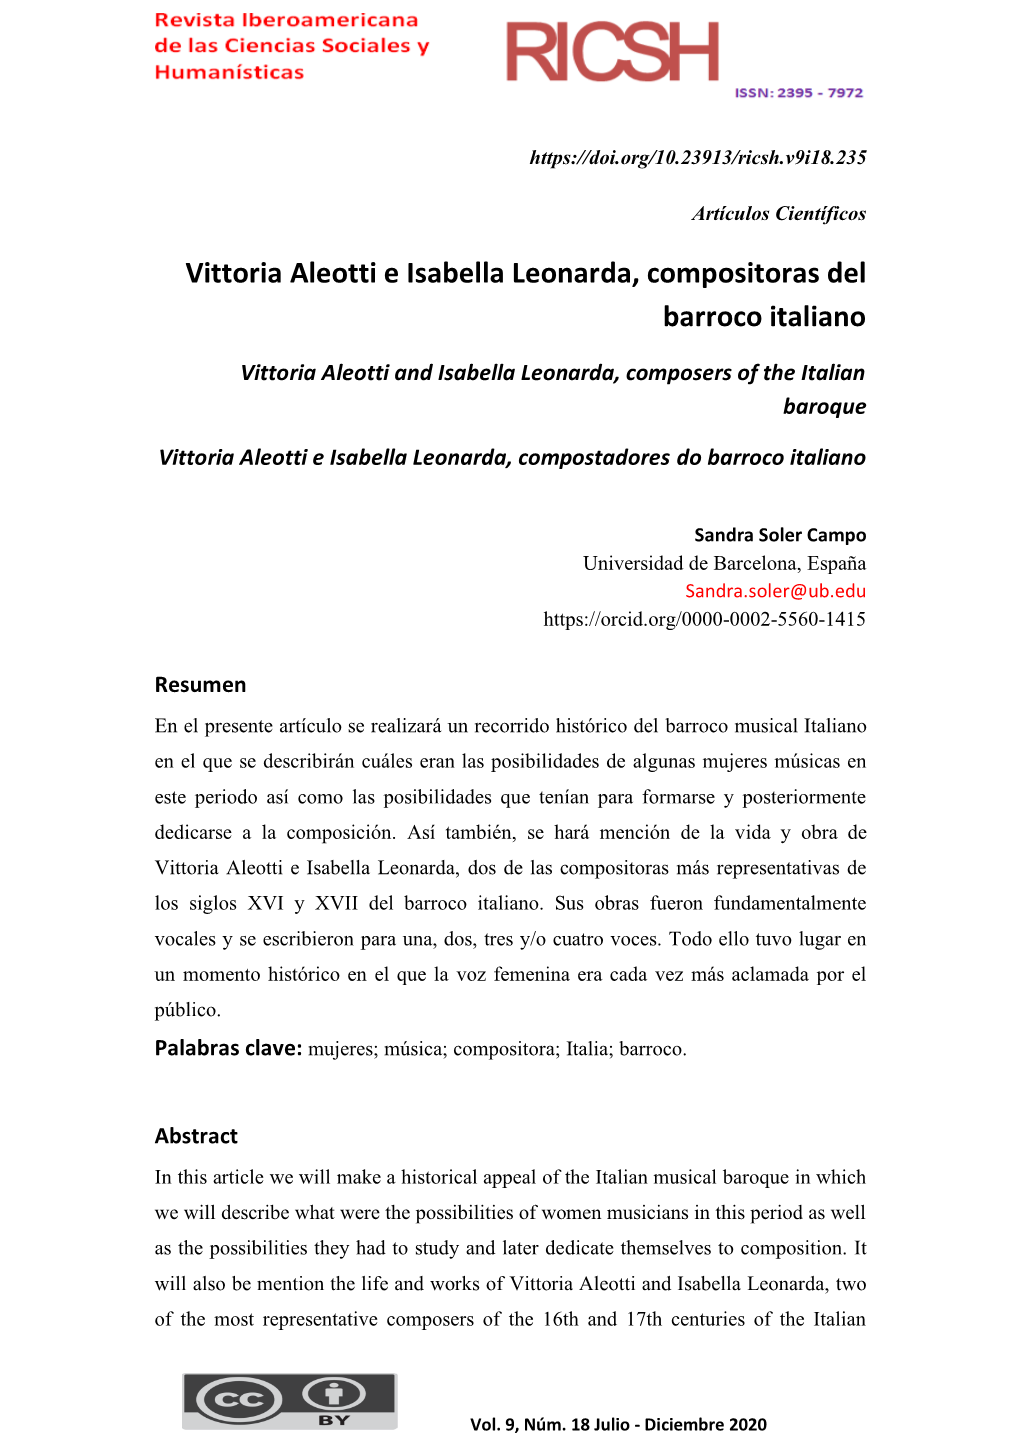 Vittoria Aleotti E Isabella Leonarda, Compositoras Del Barroco Italiano